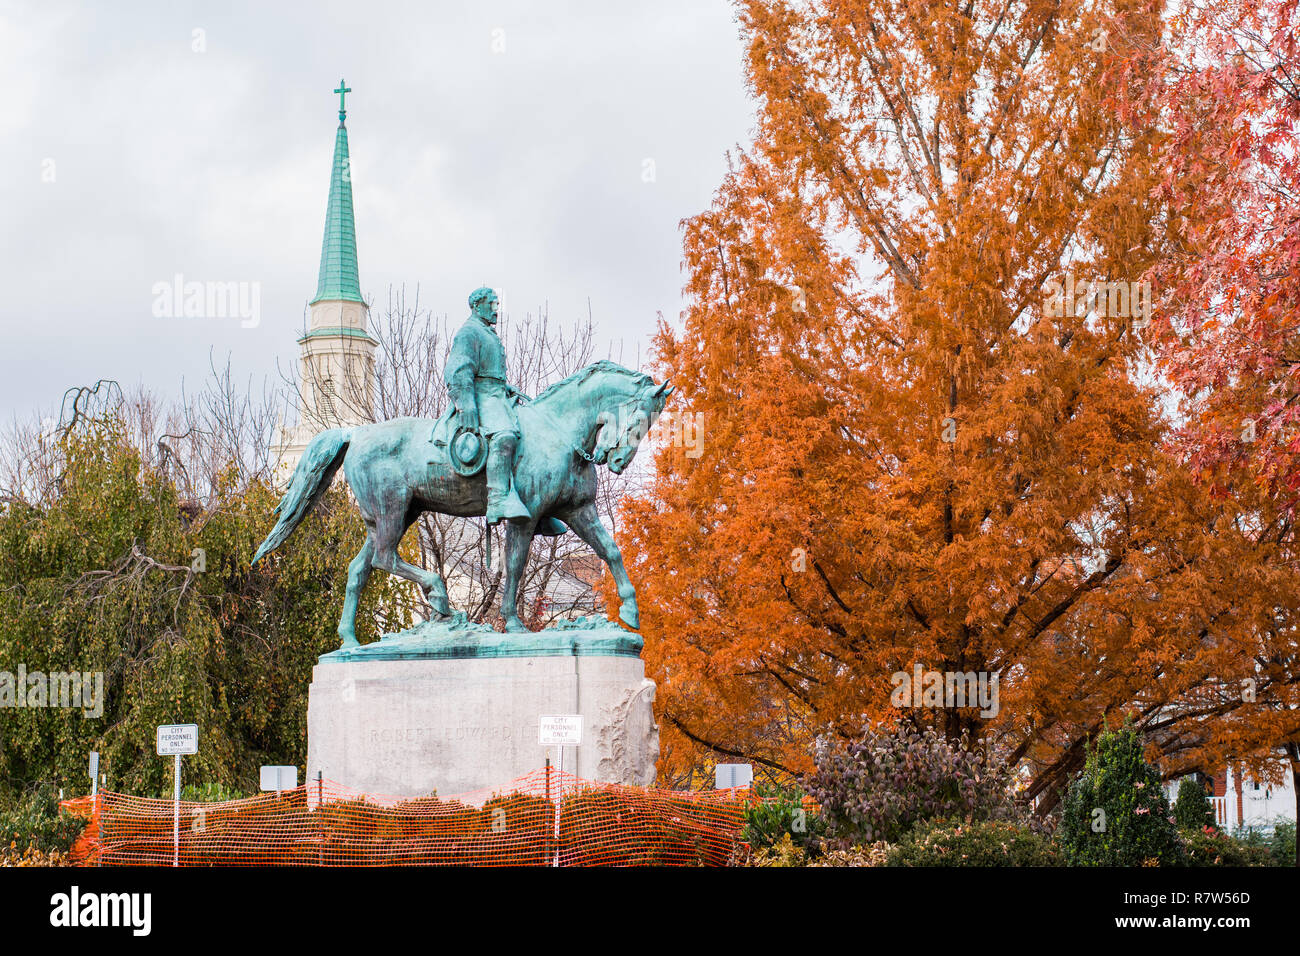 Le général Robert E. Lee le cheval en bronze dans le parc public comme les états du sud sont aux prises avec la façon d'aborder leur histoire Banque D'Images